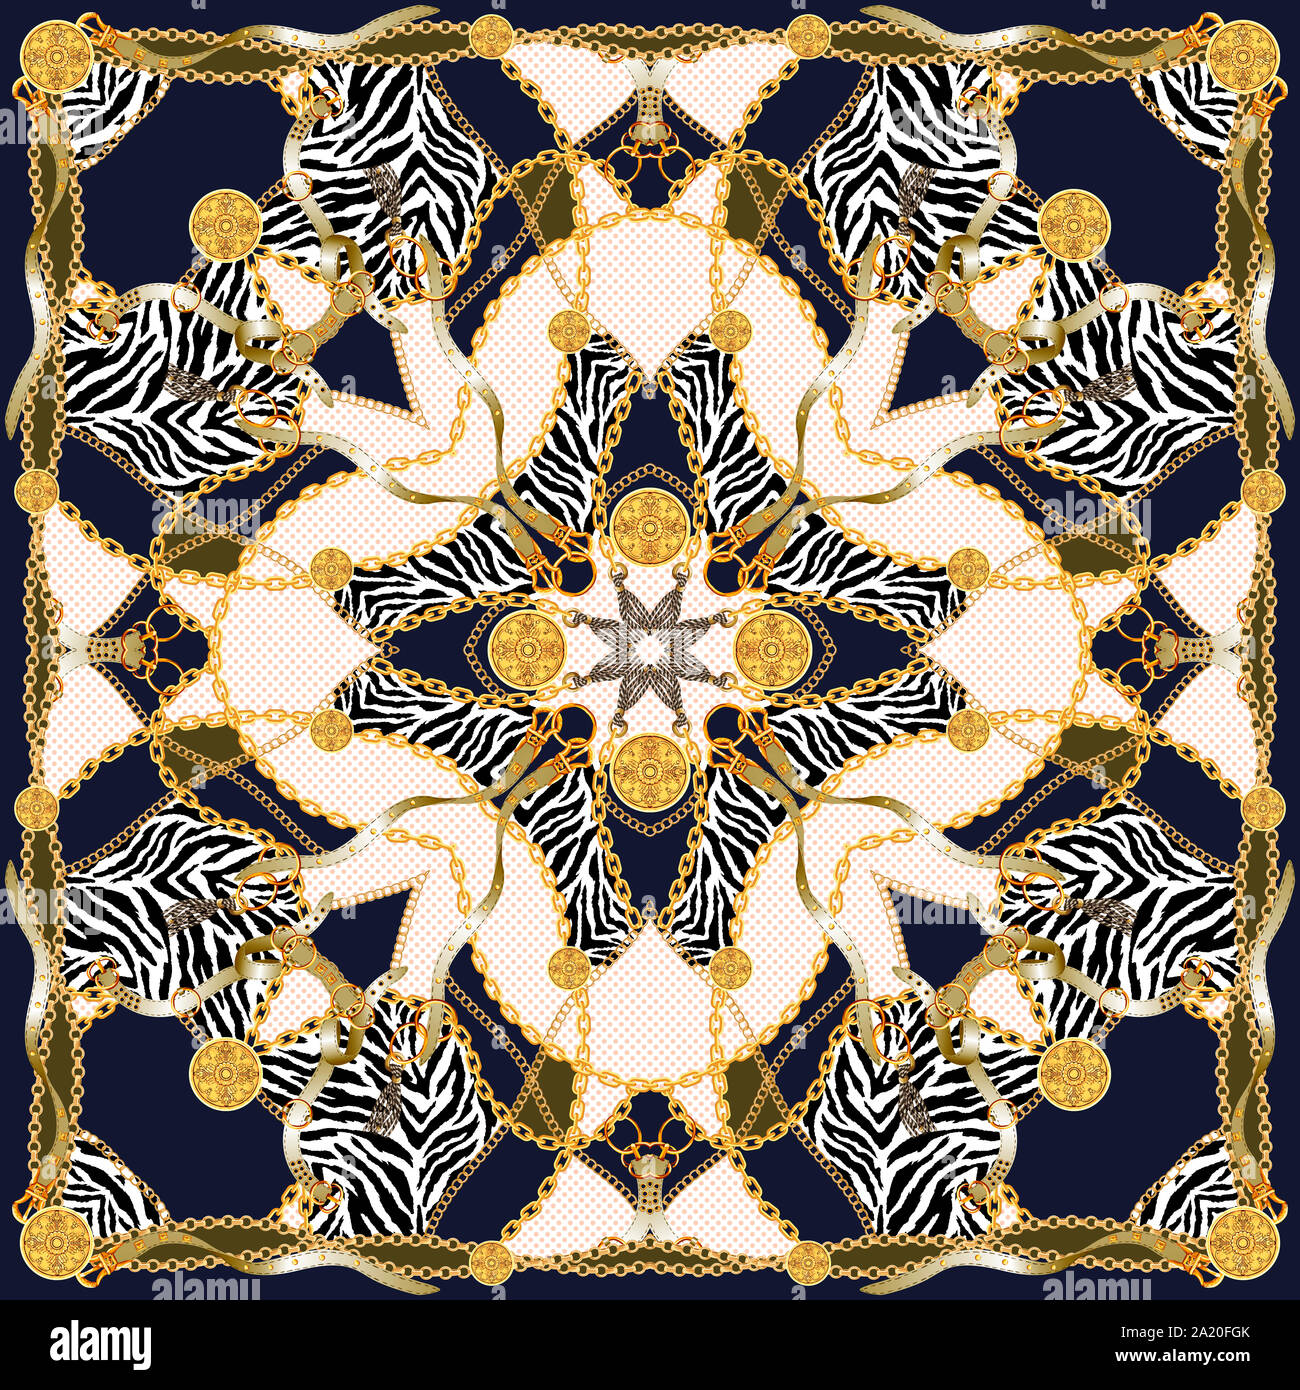 Trendy print mit goldenen Ketten, Riemen und Zebra. Nahtlose Muster mit klassischen Elementen. Damenmode, modernen Schal Sammlung für Textildruck. Stockfoto